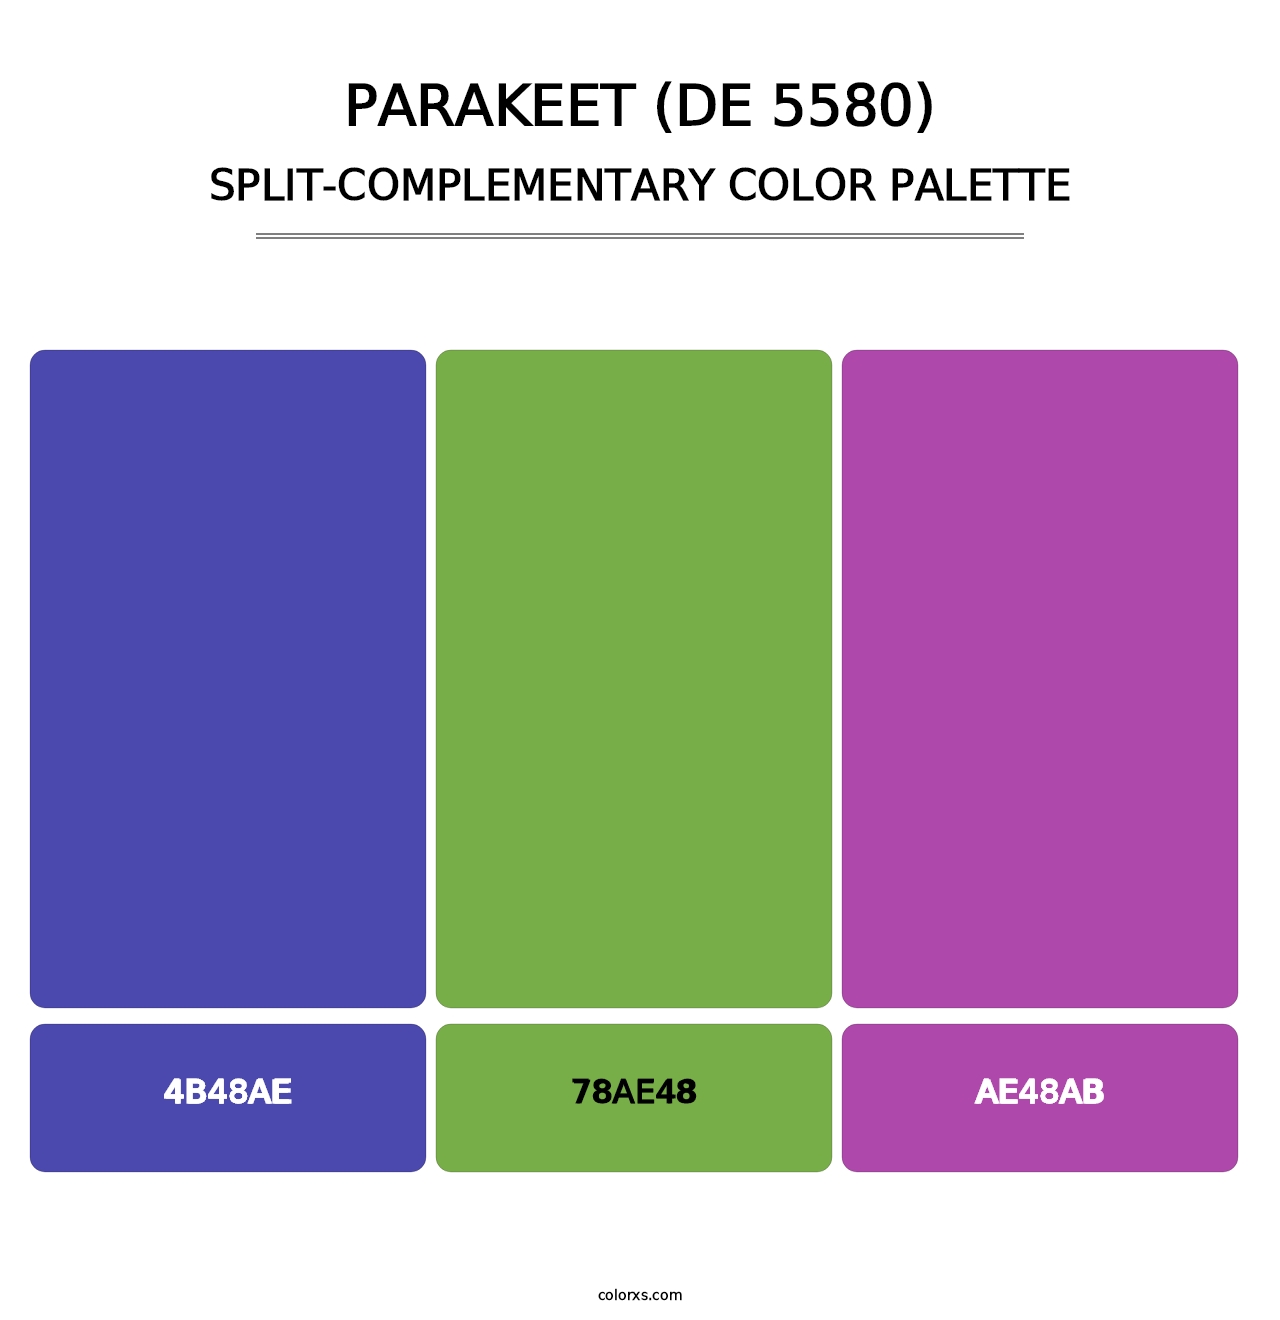 Parakeet (DE 5580) - Split-Complementary Color Palette